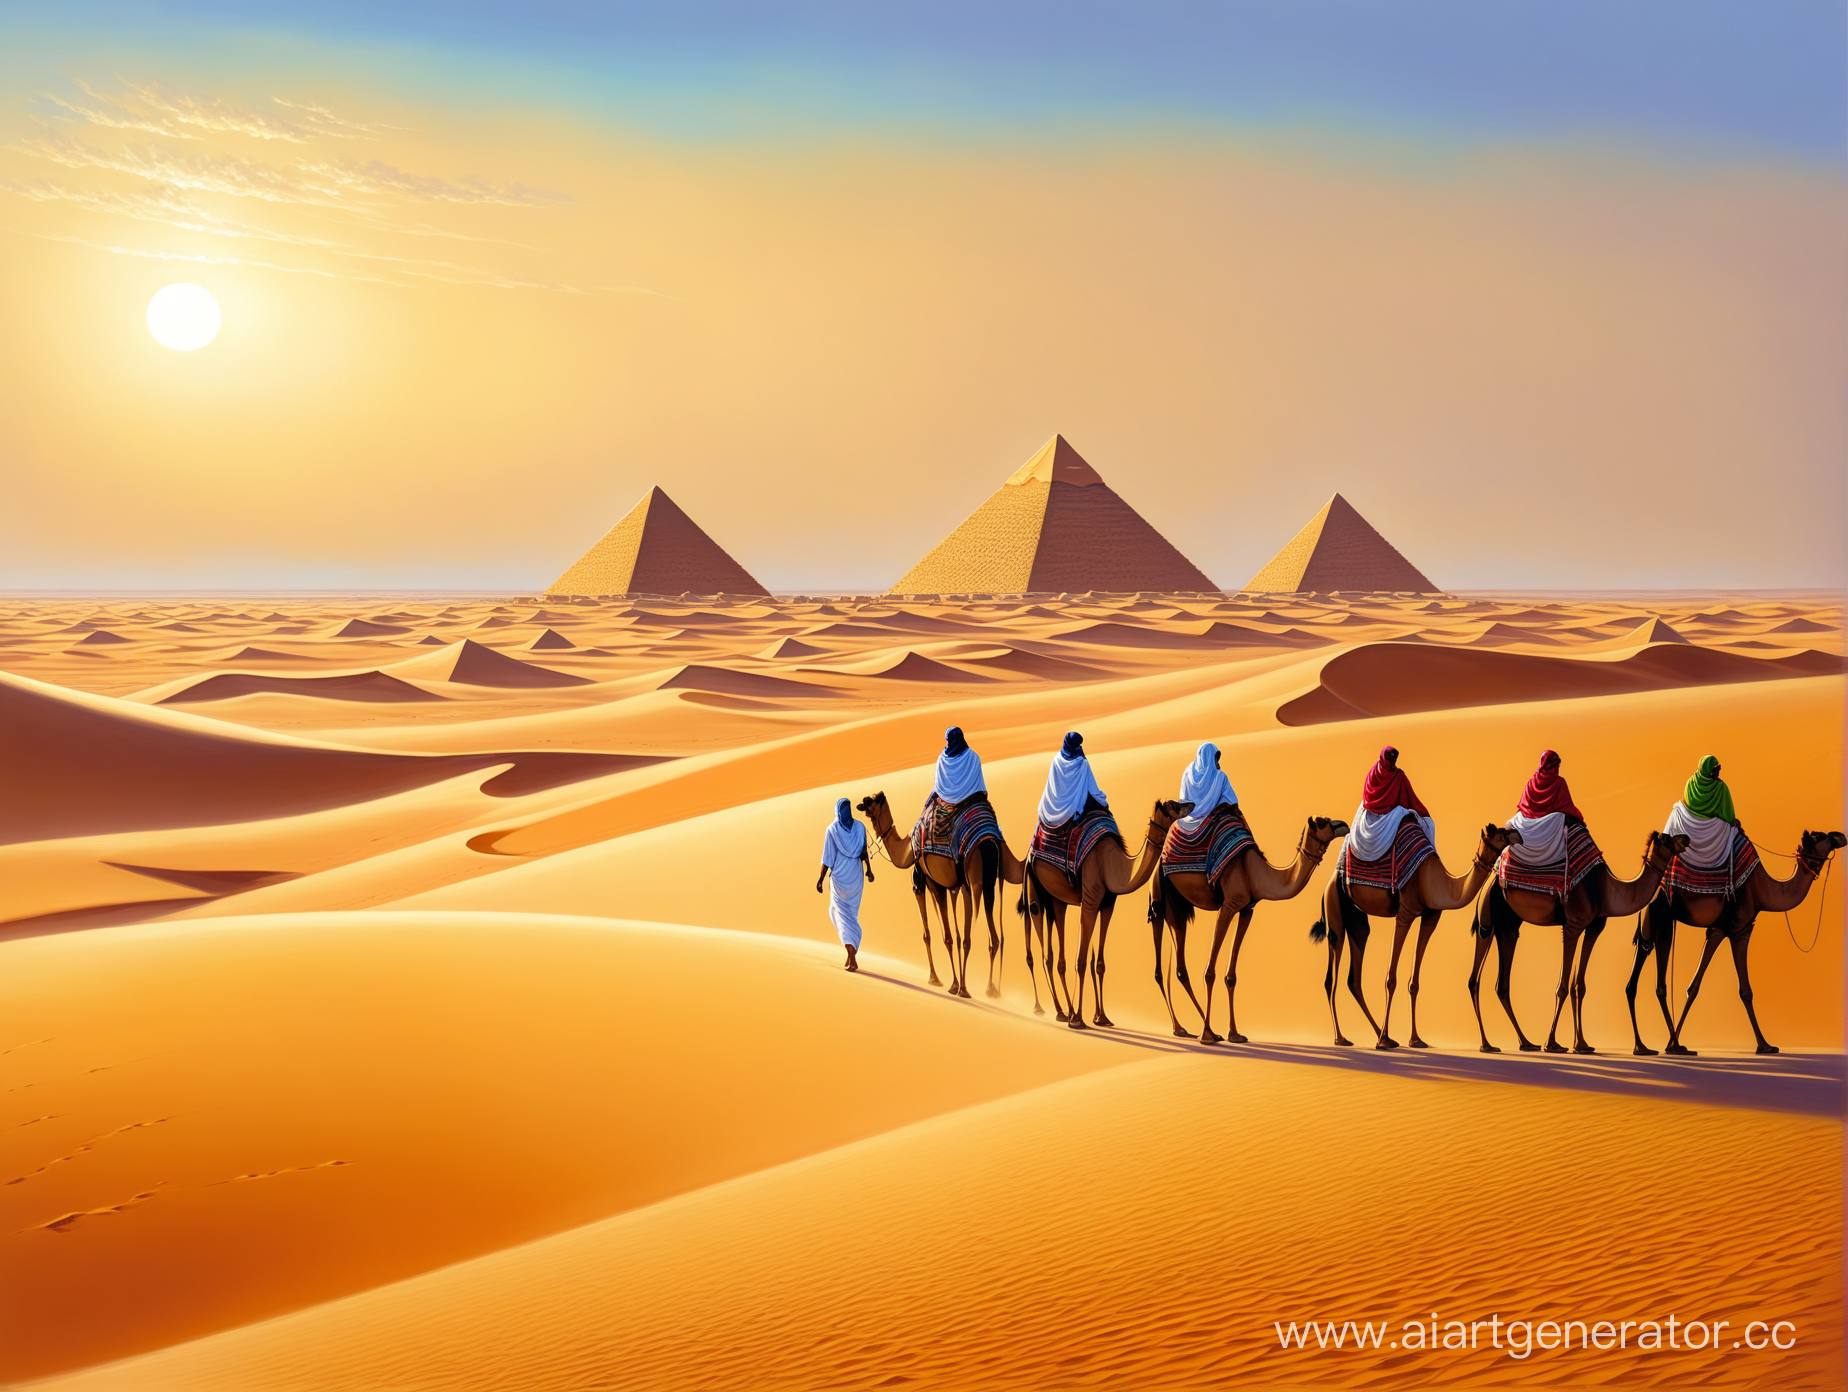 Пустыня Сахара,барханы, караван верблюдов,египетские пирамиды,профессиональный, реалистичный, цветной рисунок, масло, живопись, шедевр. 